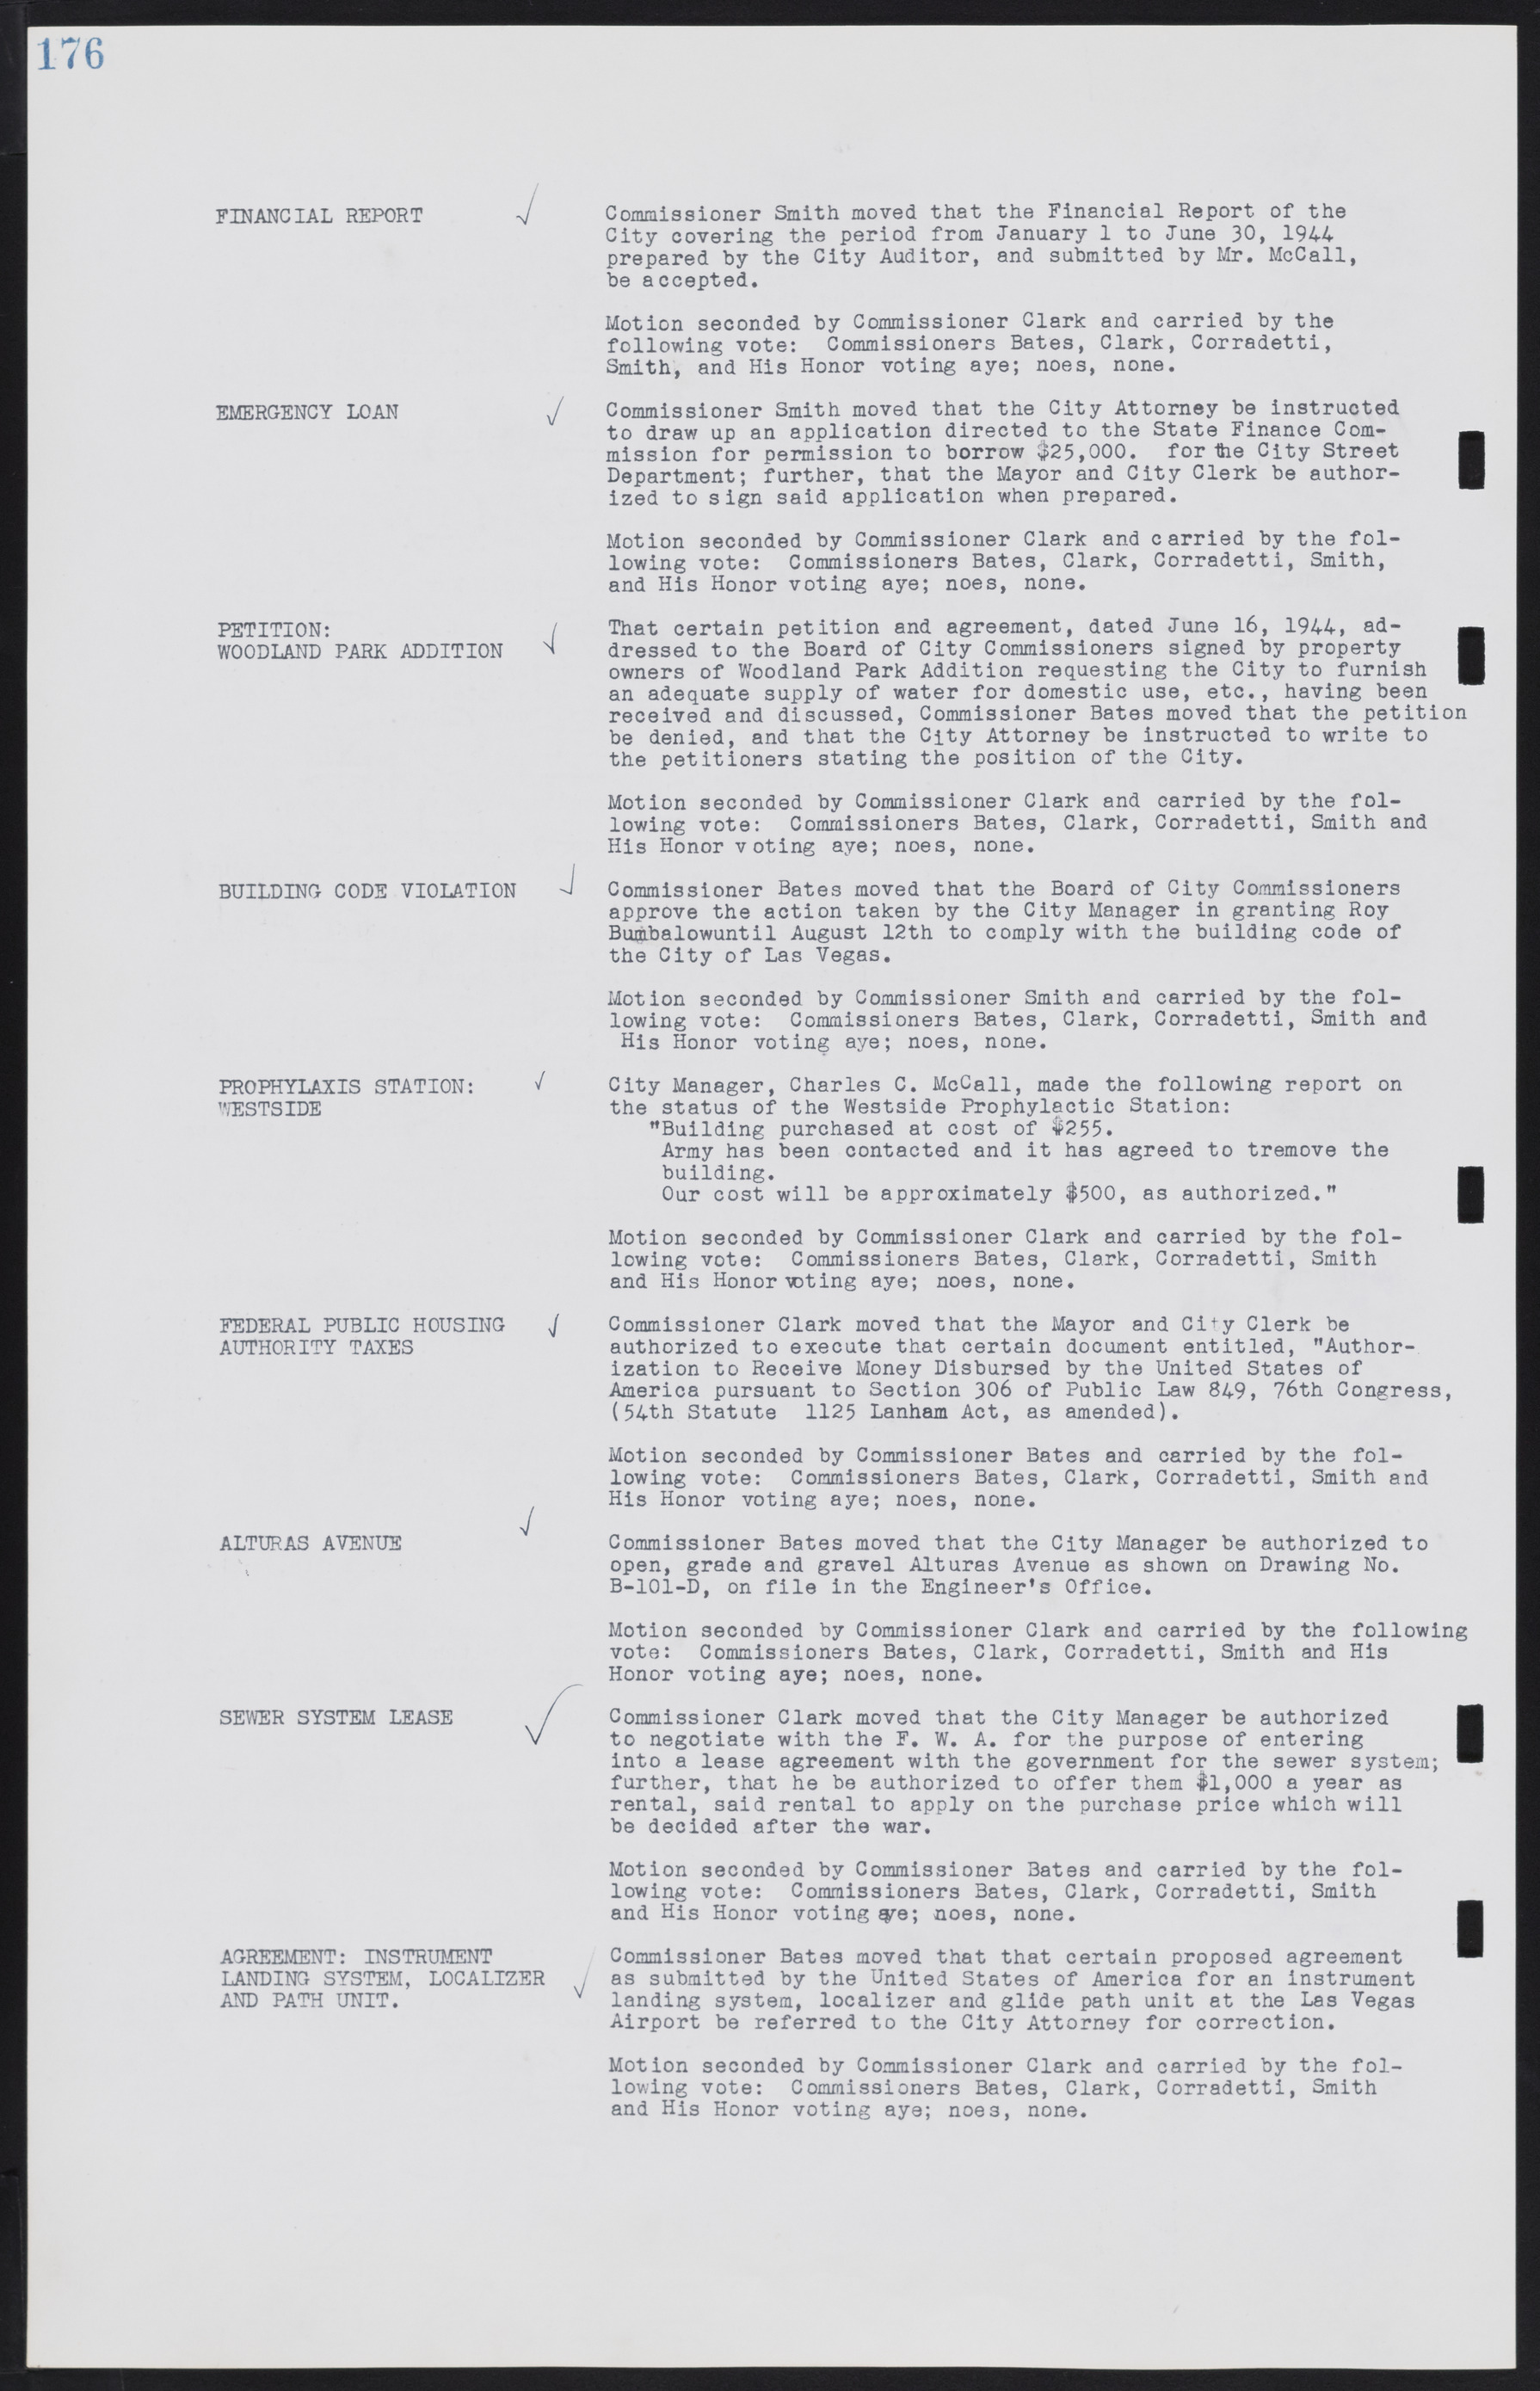 Las Vegas City Commission Minutes, August 11, 1942 to December 30, 1946, lvc000005-195